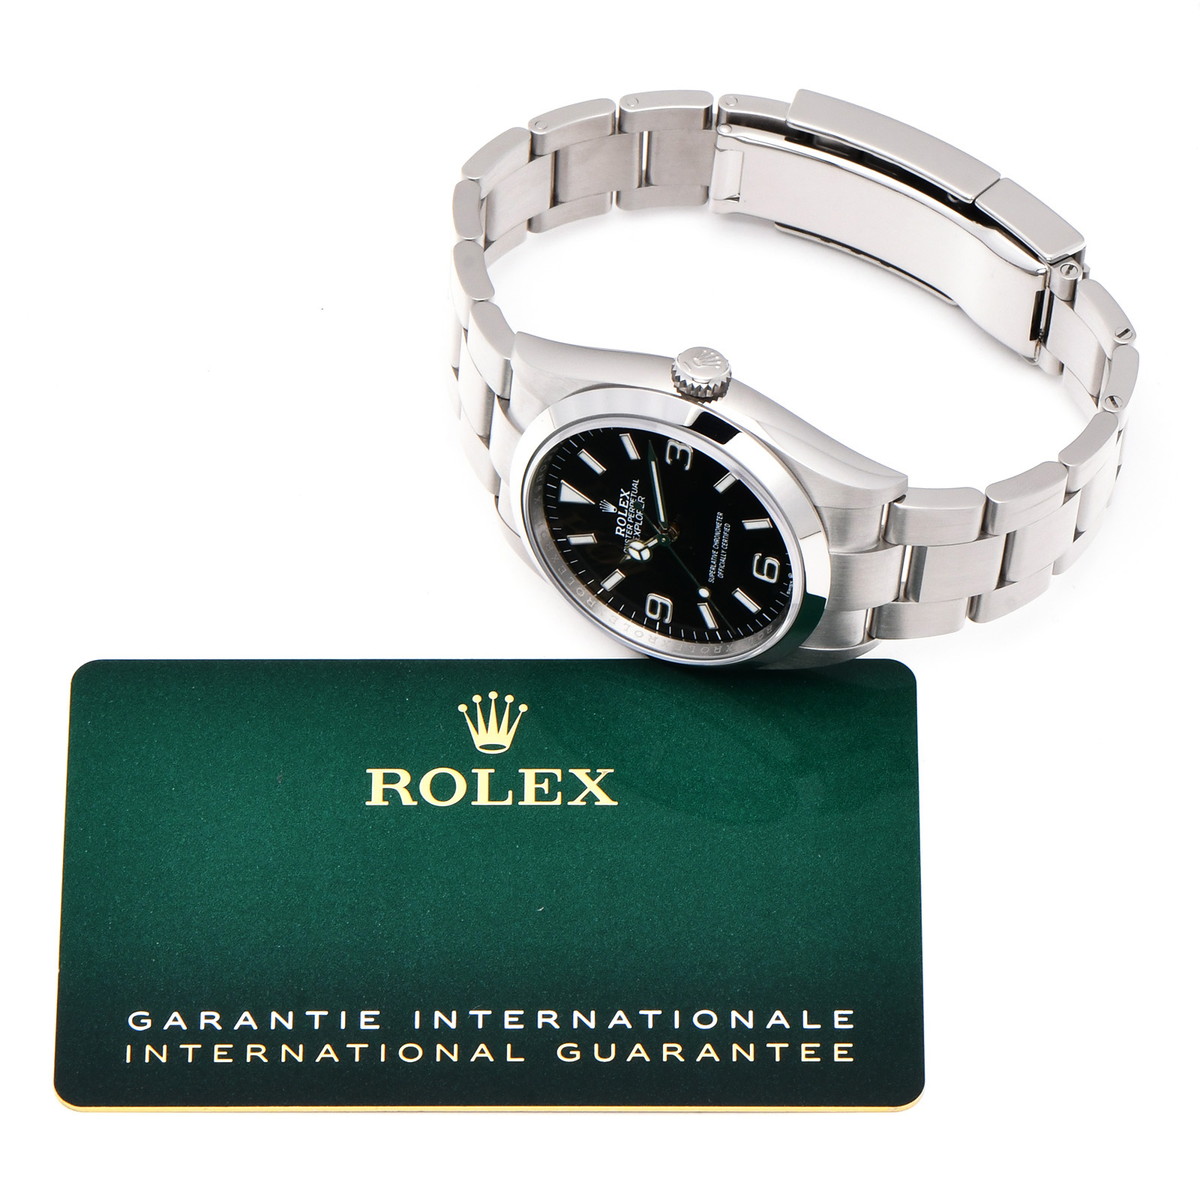 ロレックス ROLEX エクスプローラー36 ランダムシリアル 124270 ブラック文字盤 SS 自動巻き メンズ 腕時計